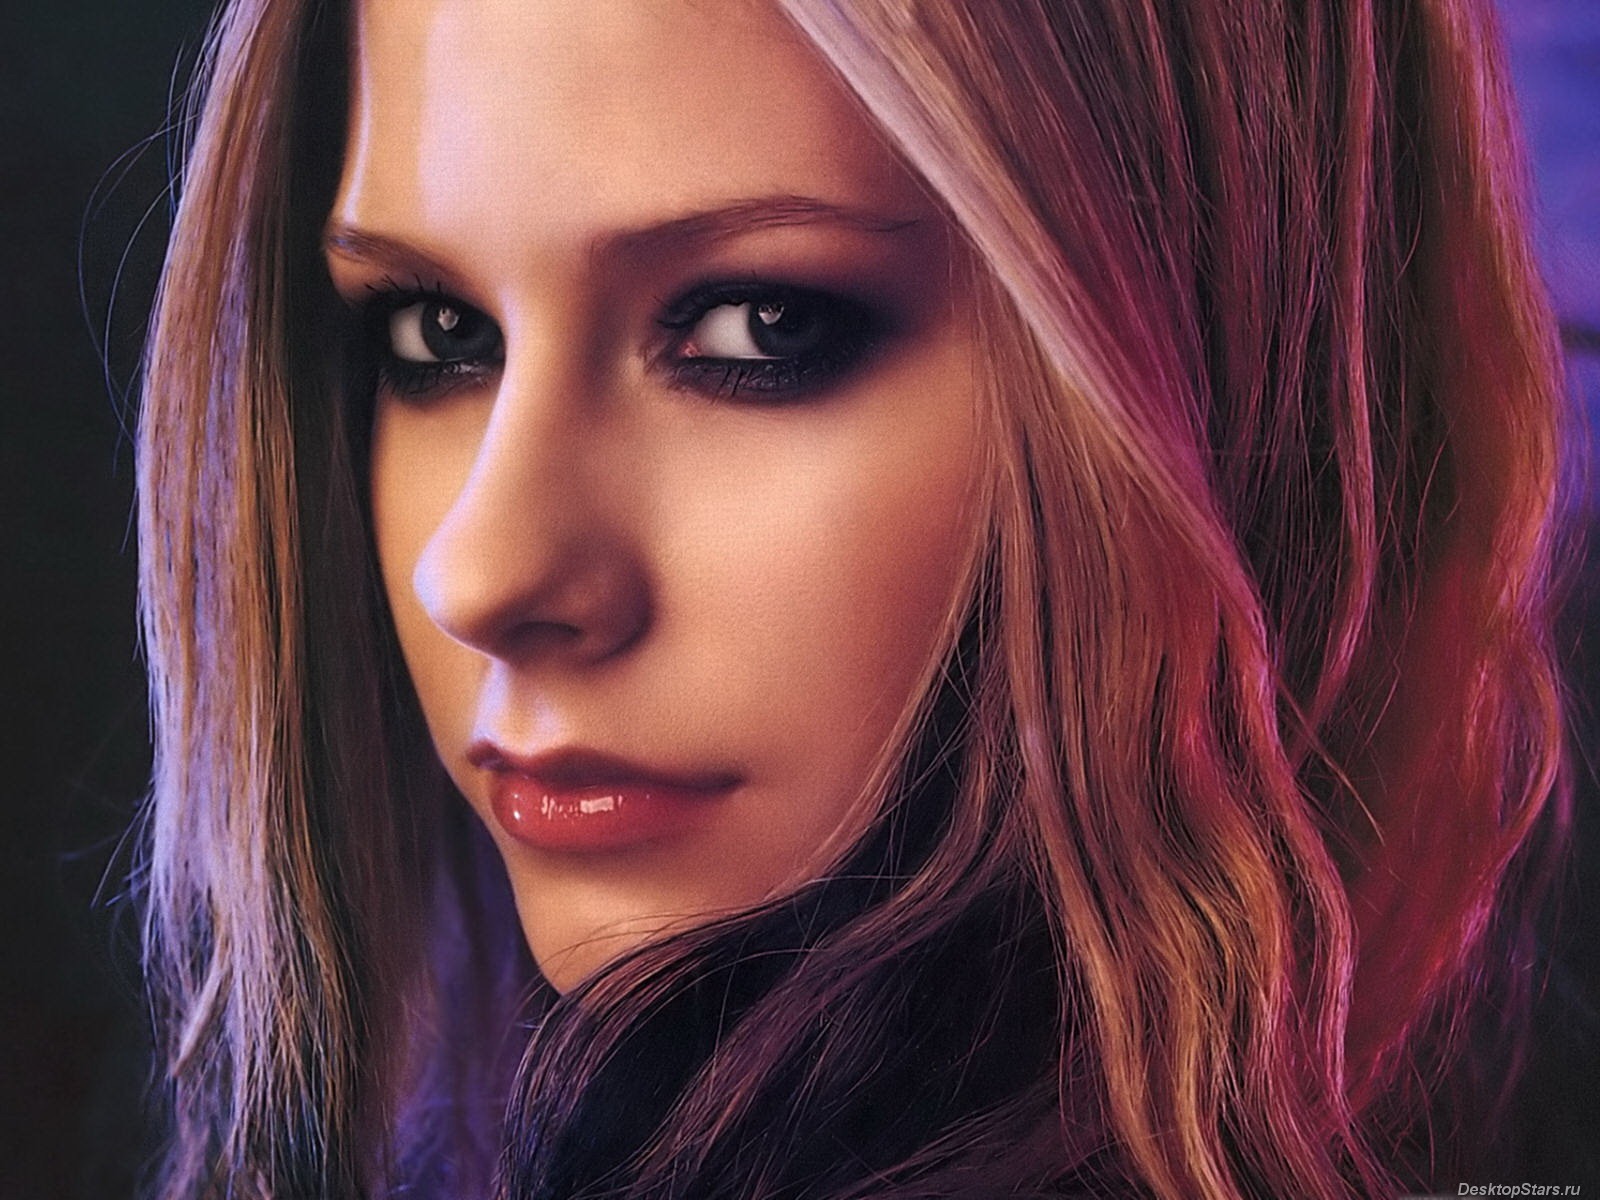 Avril Lavigne 艾薇儿·拉维妮 美女壁纸(三)3 - 1600x1200